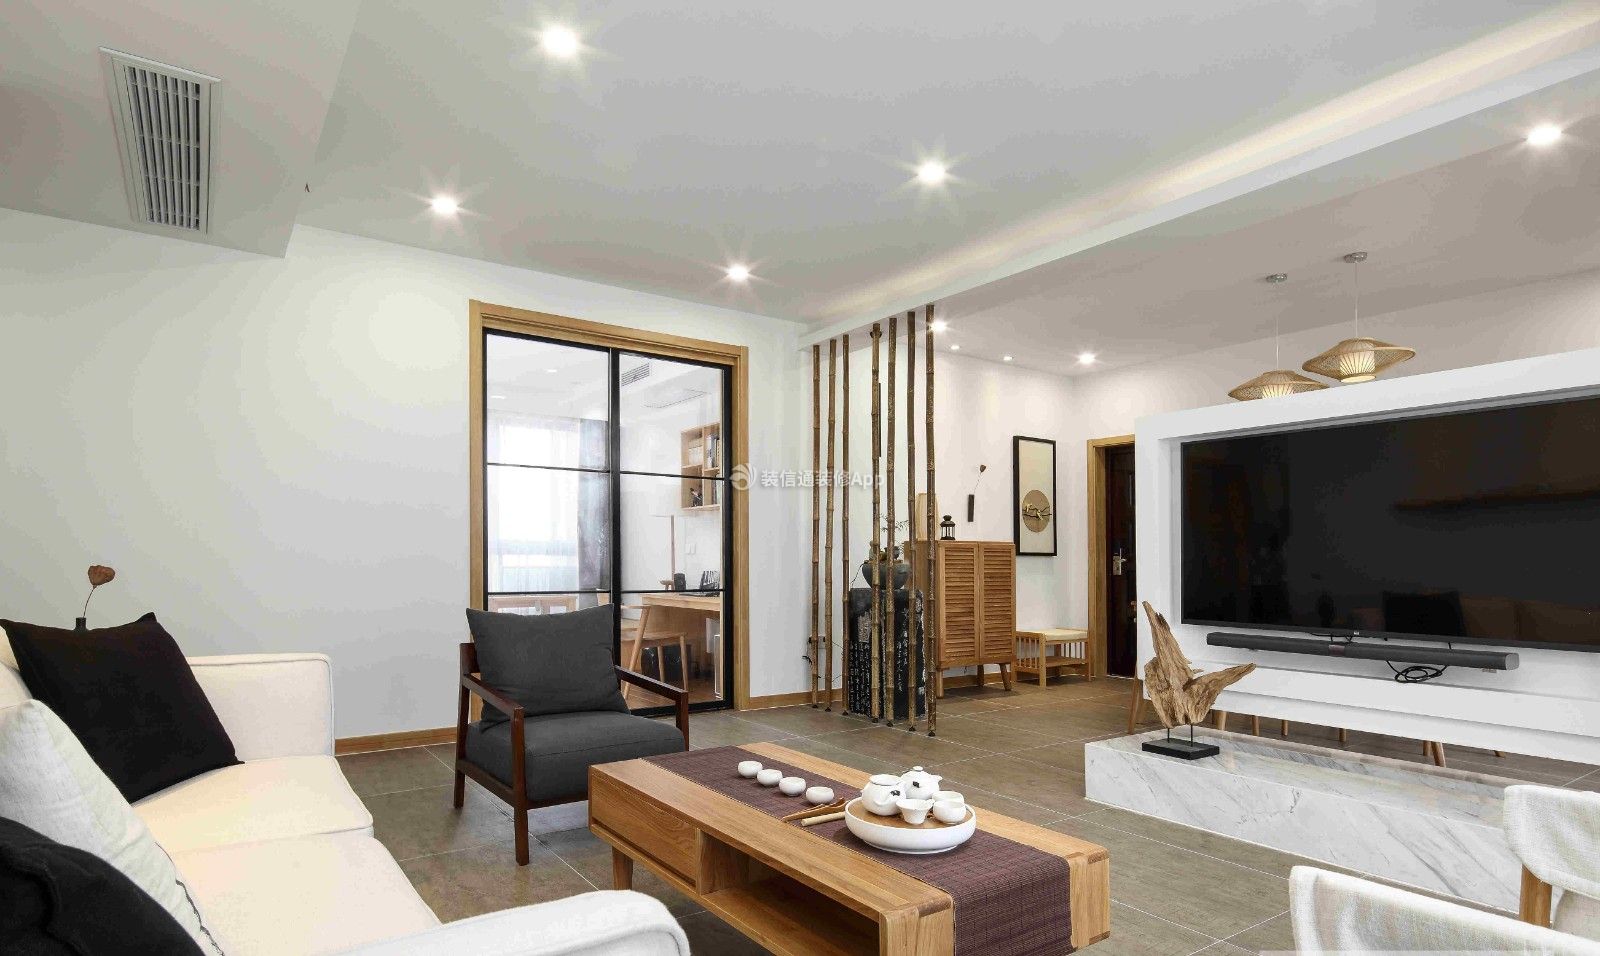 最新140平米日式三居客厅装修设计效果图